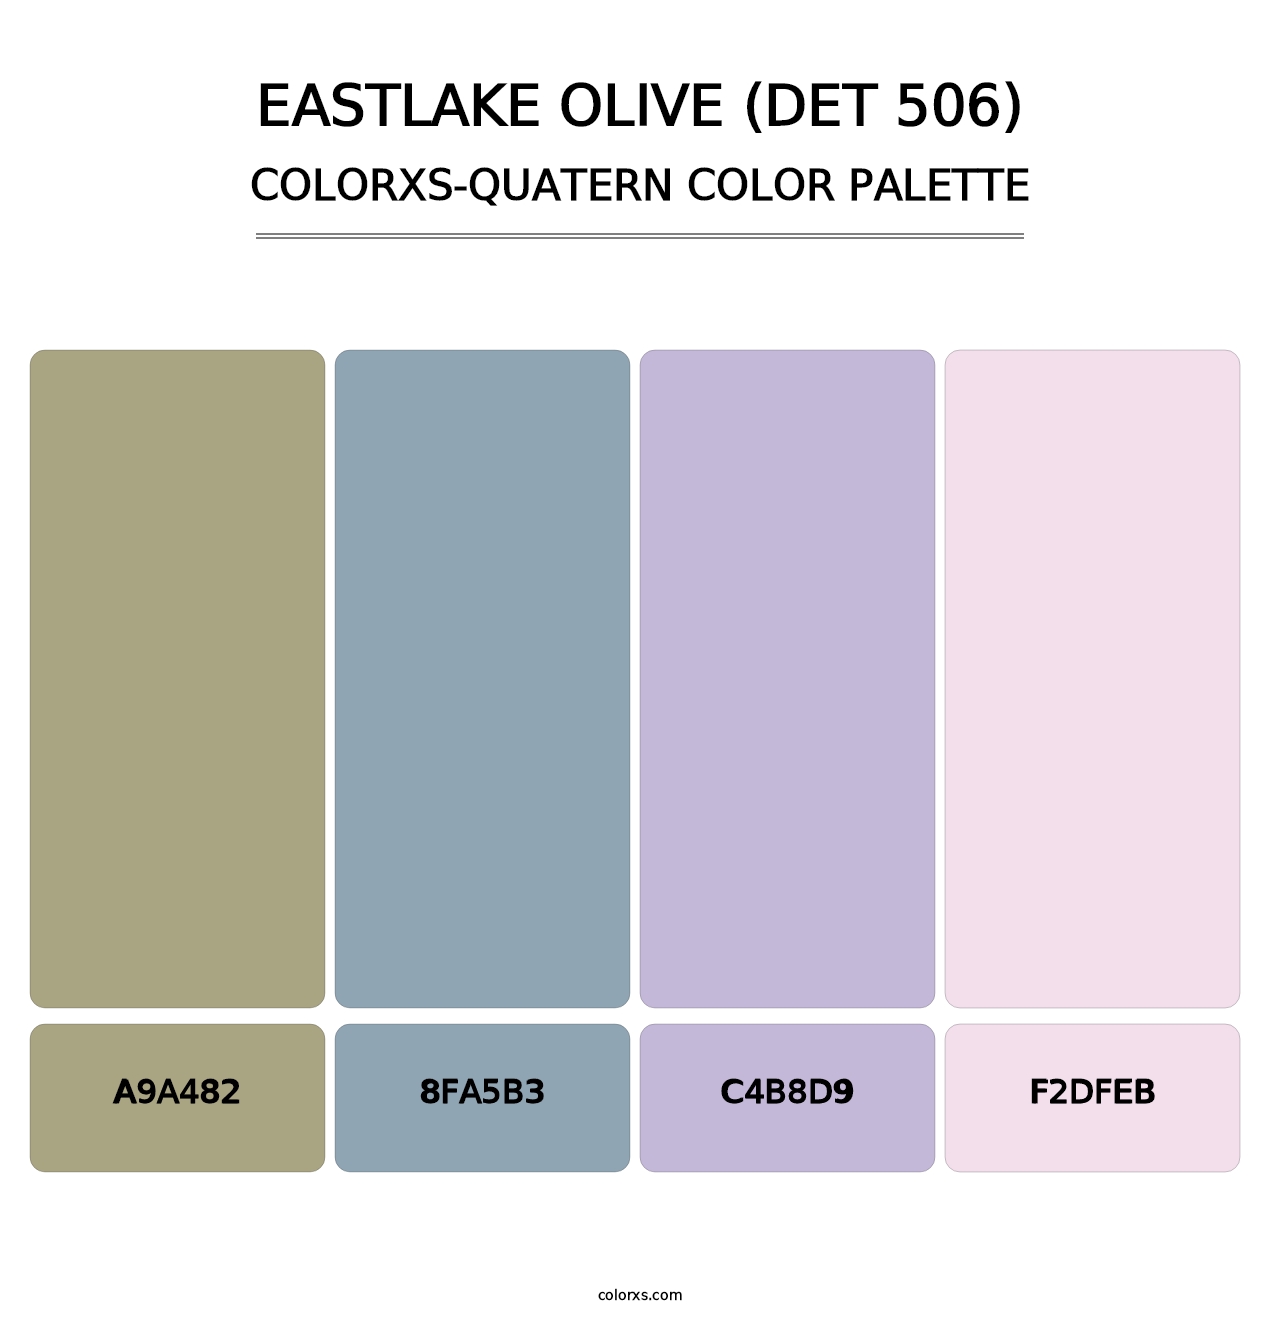 Eastlake Olive (DET 506) - Colorxs Quatern Palette